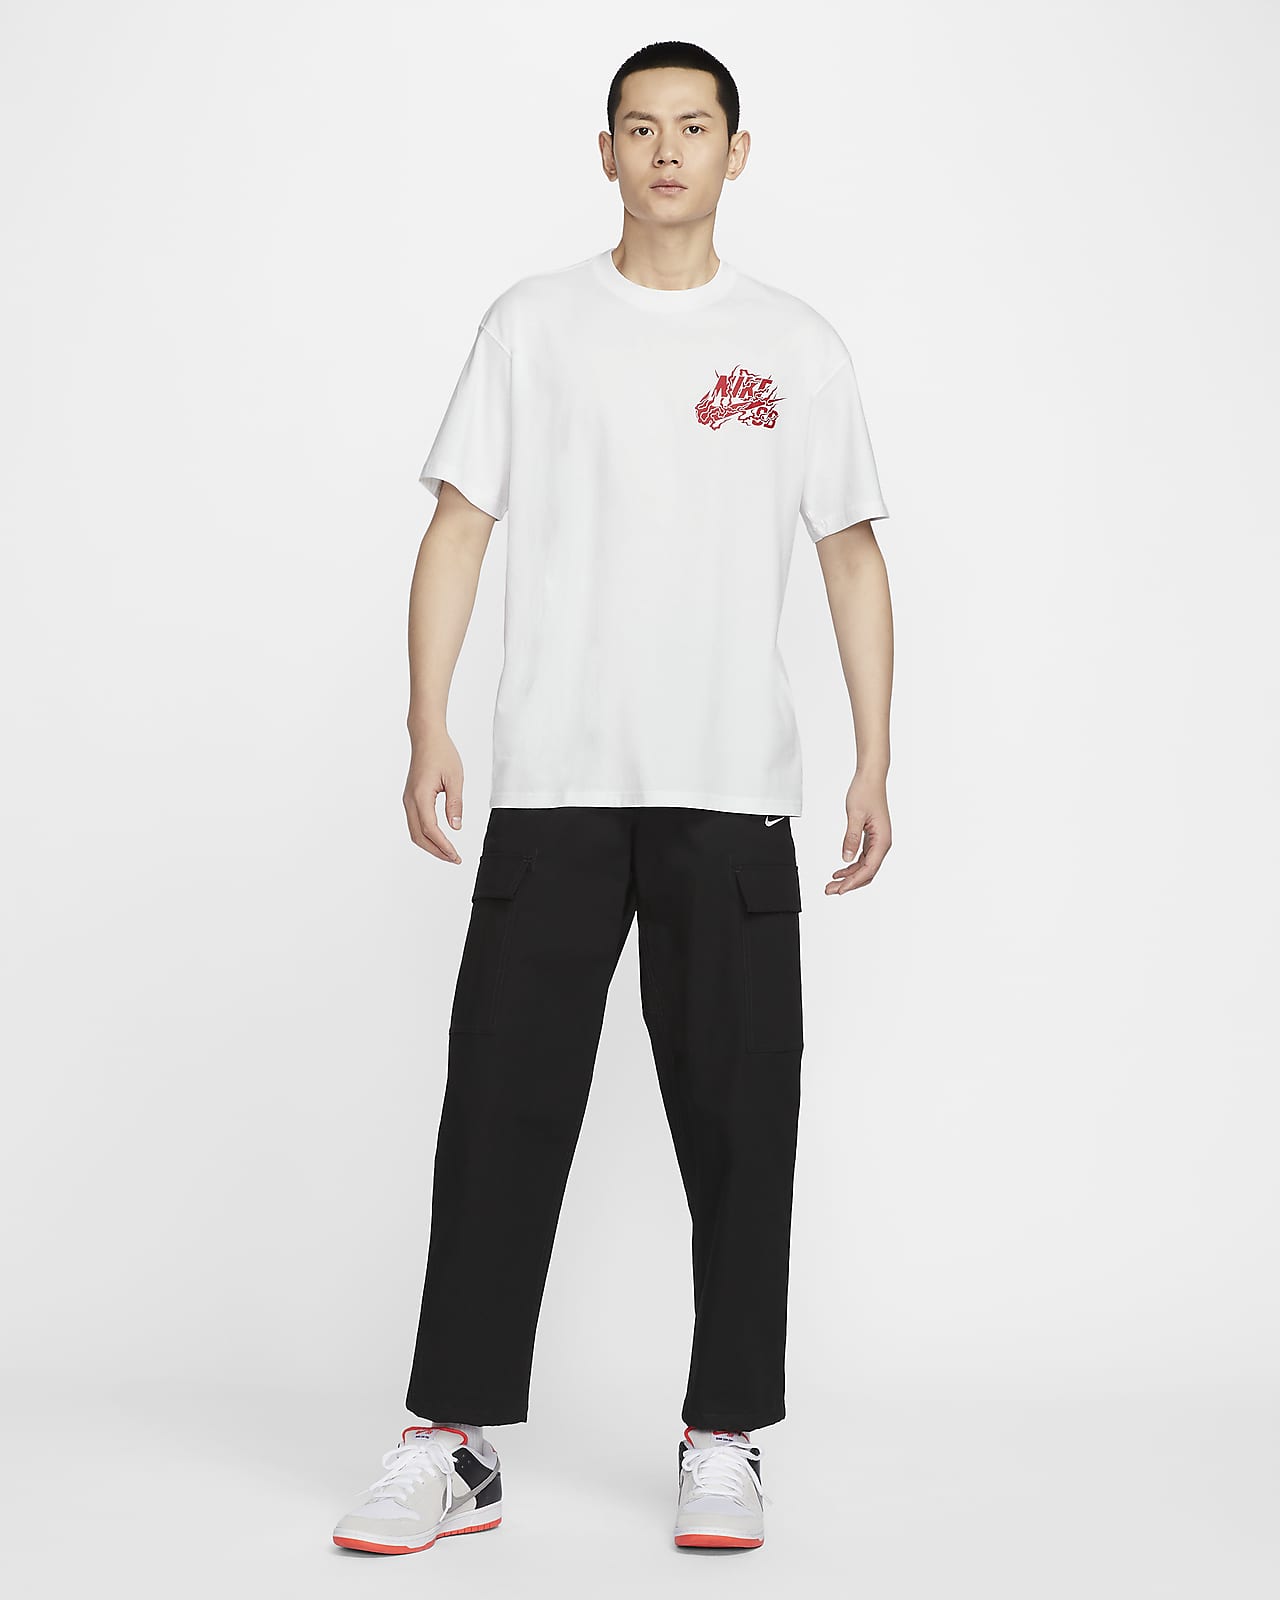 NIKE公式】ナイキ SB スケートボード Tシャツ.オンラインストア (通販 